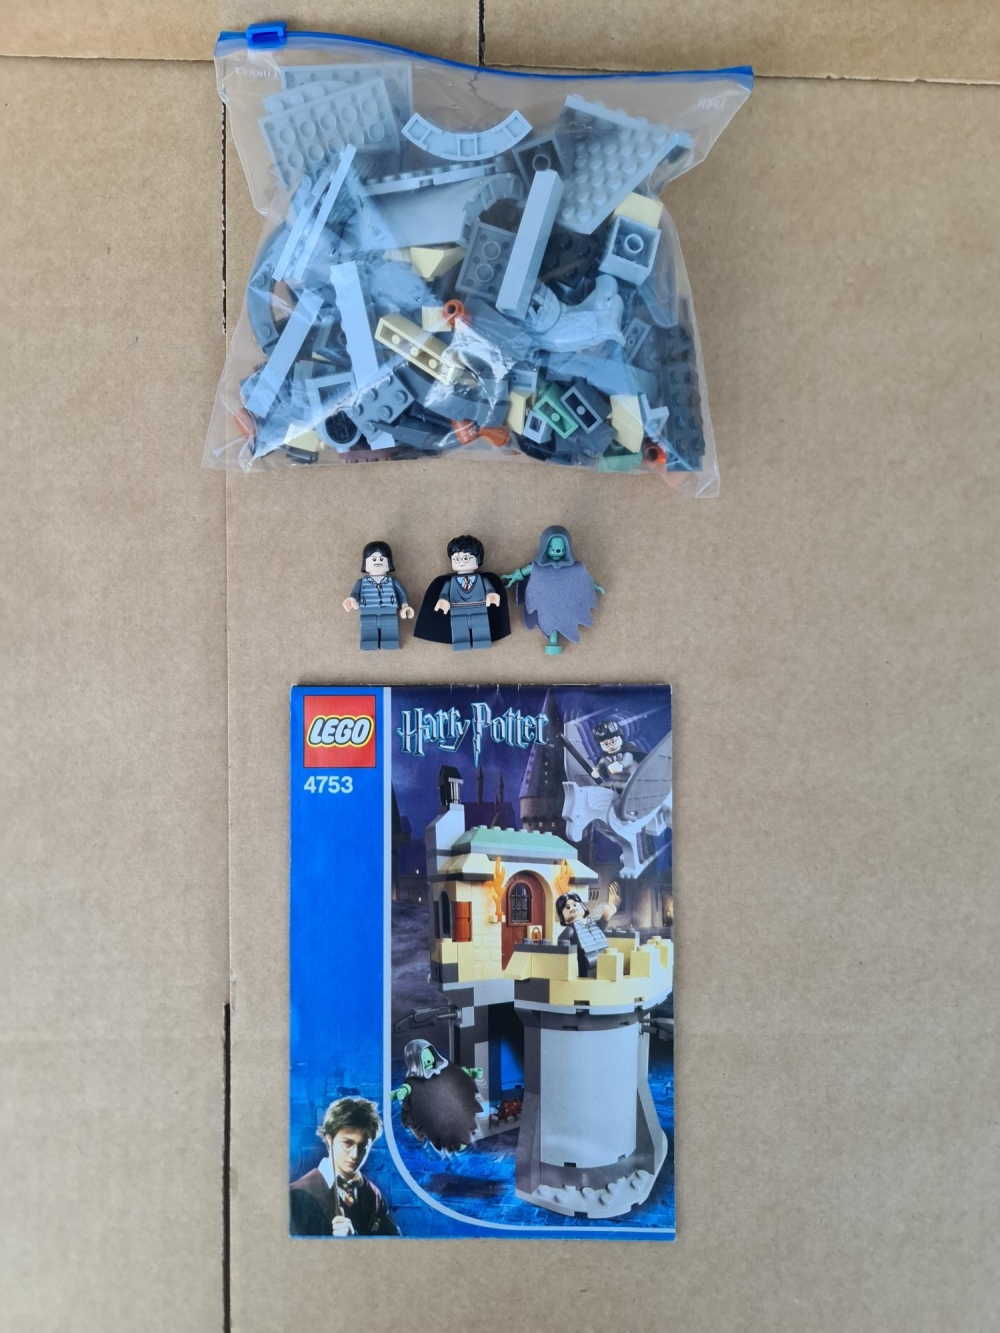 Sett 4753 fra Lego Harry Potter : Prisoner of Azkaban serien
Meget pent. Komplett med manual.